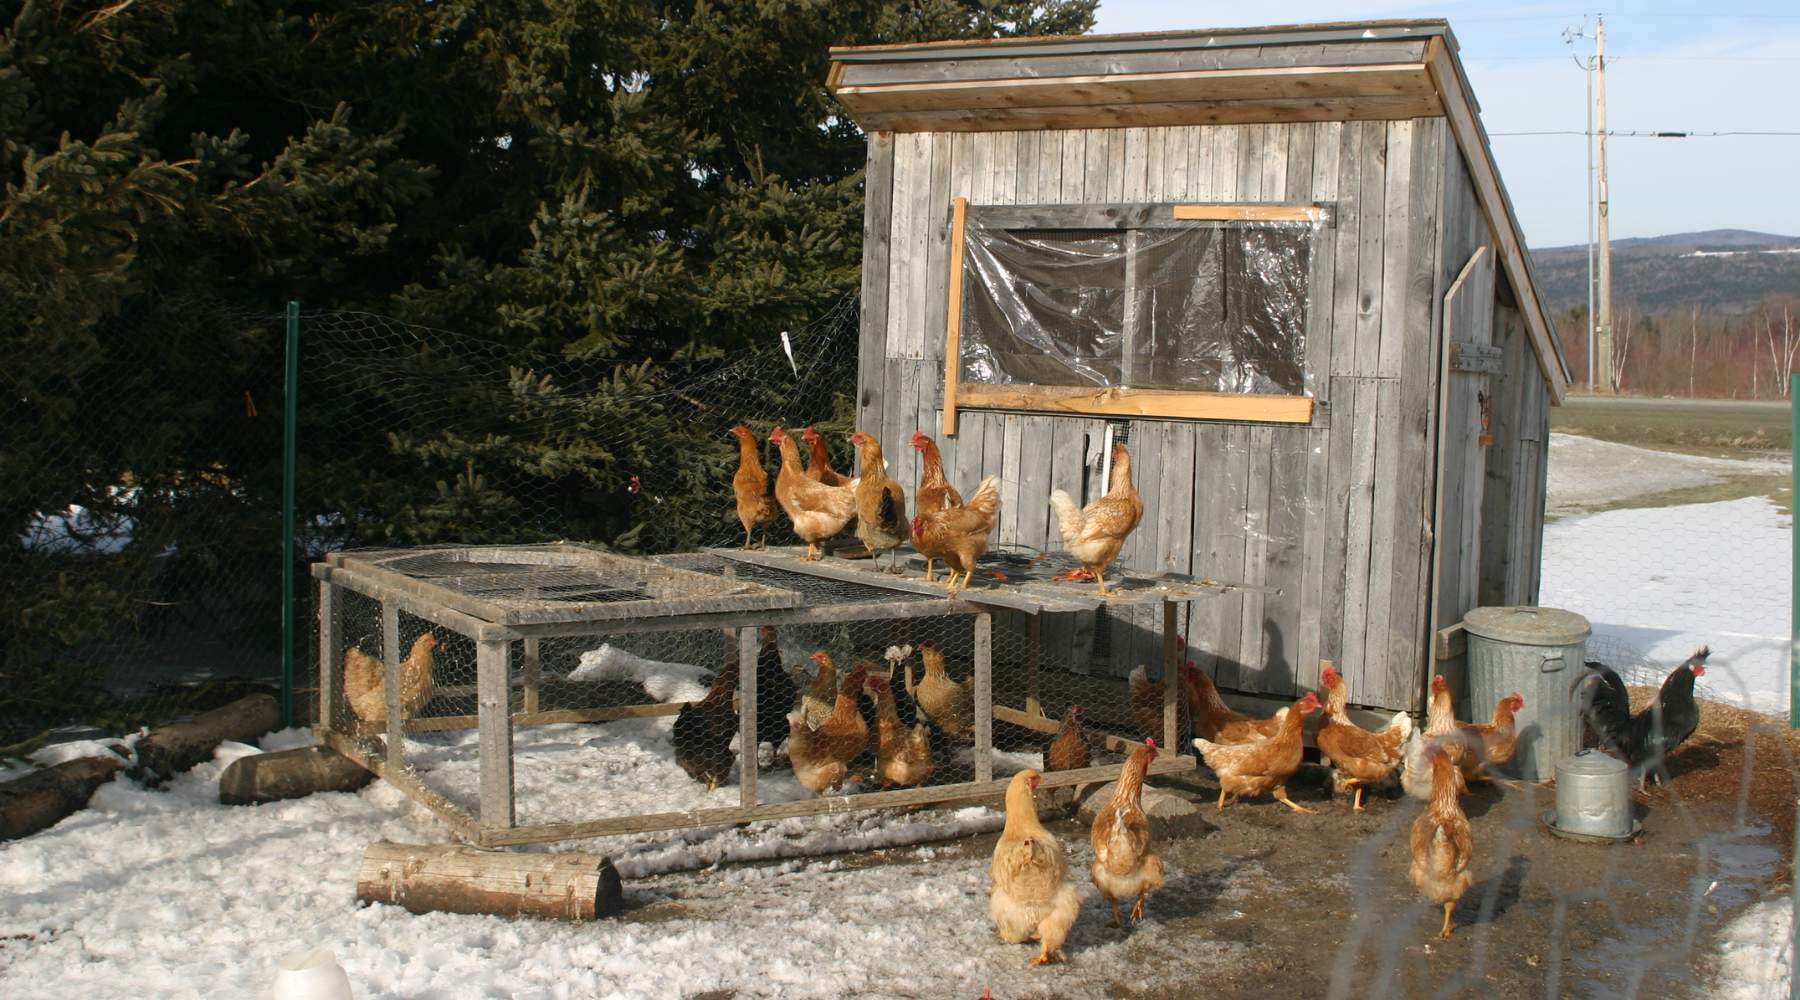 Frugal Ways to Build a Chicken Coop: The A-Frame Chicken Coop Design